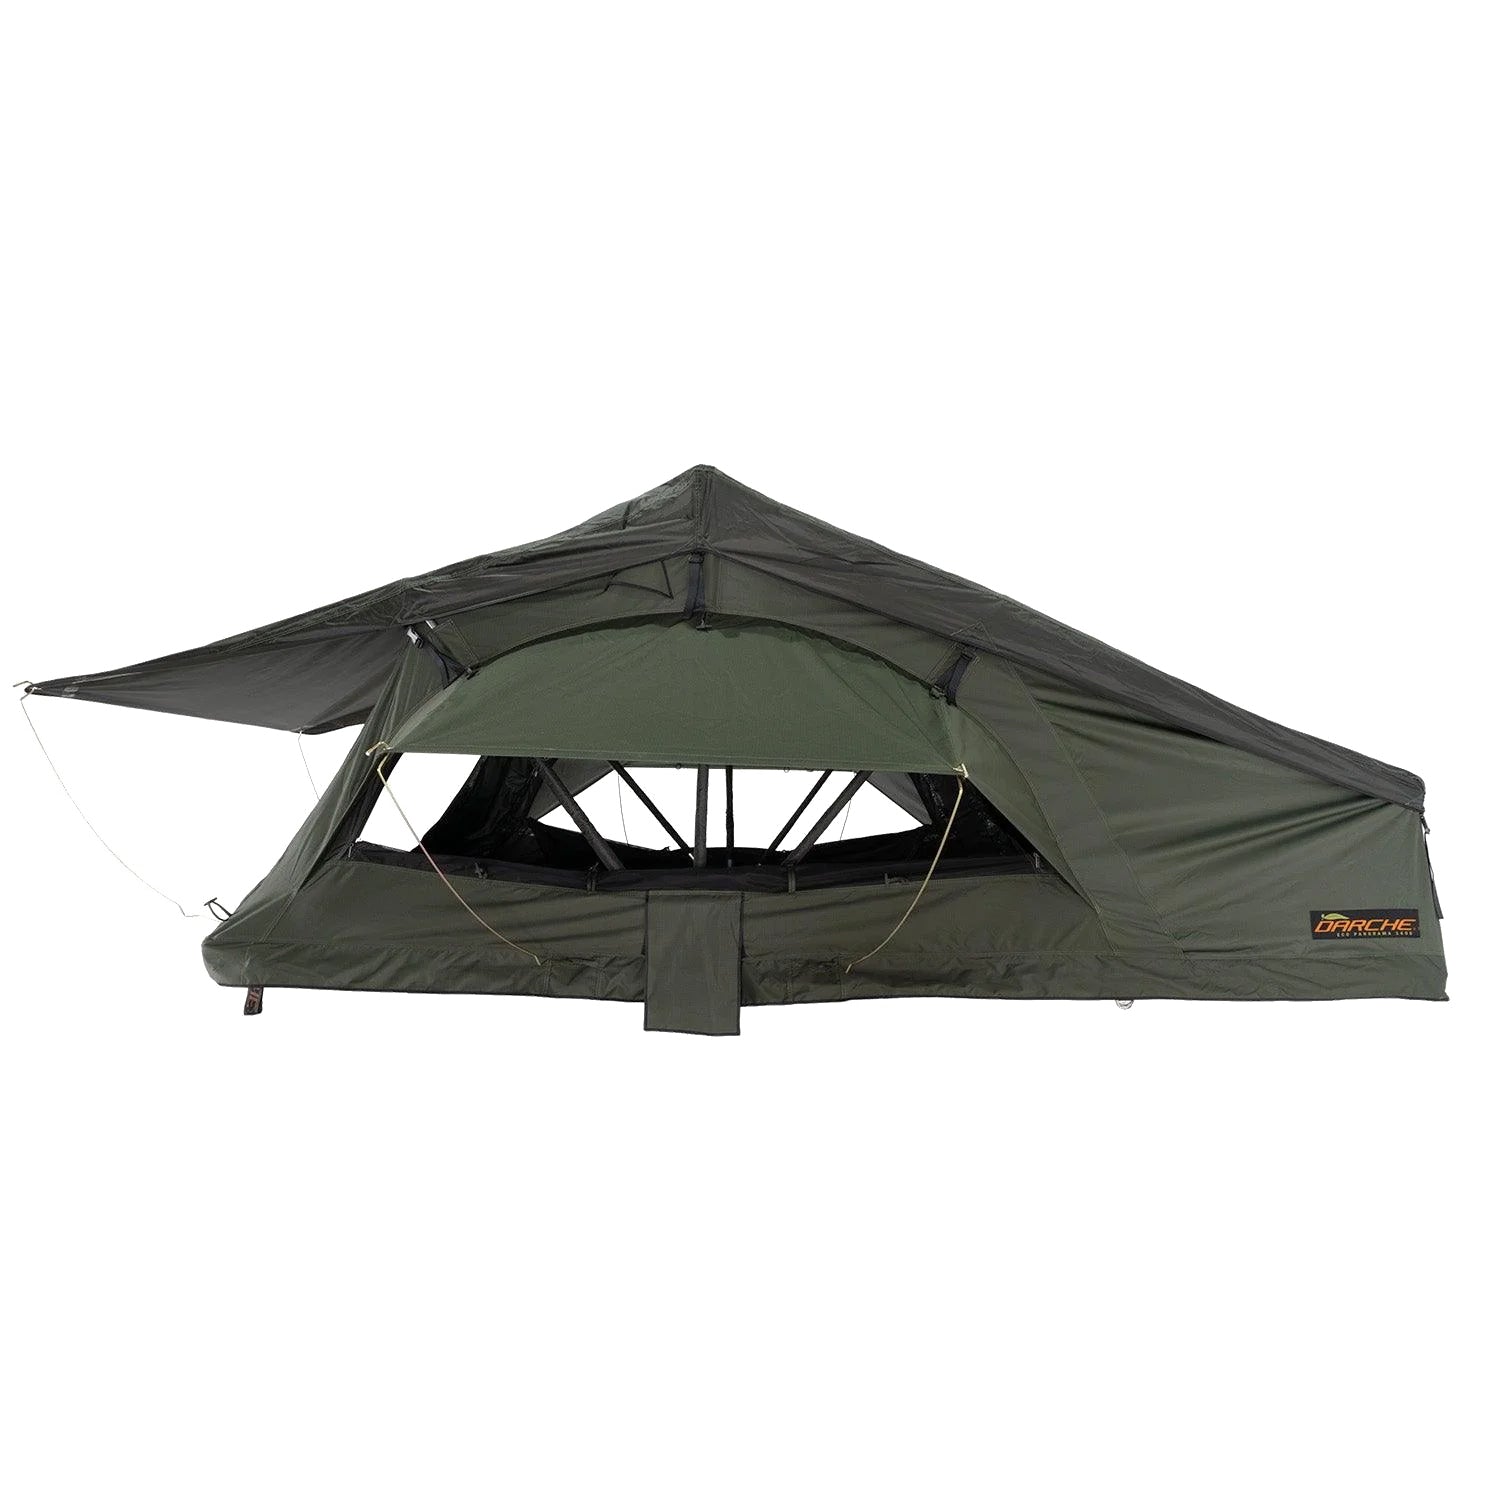 Darche ECO 1400 Panorama Roof Tent - Darche - T050801606ECO